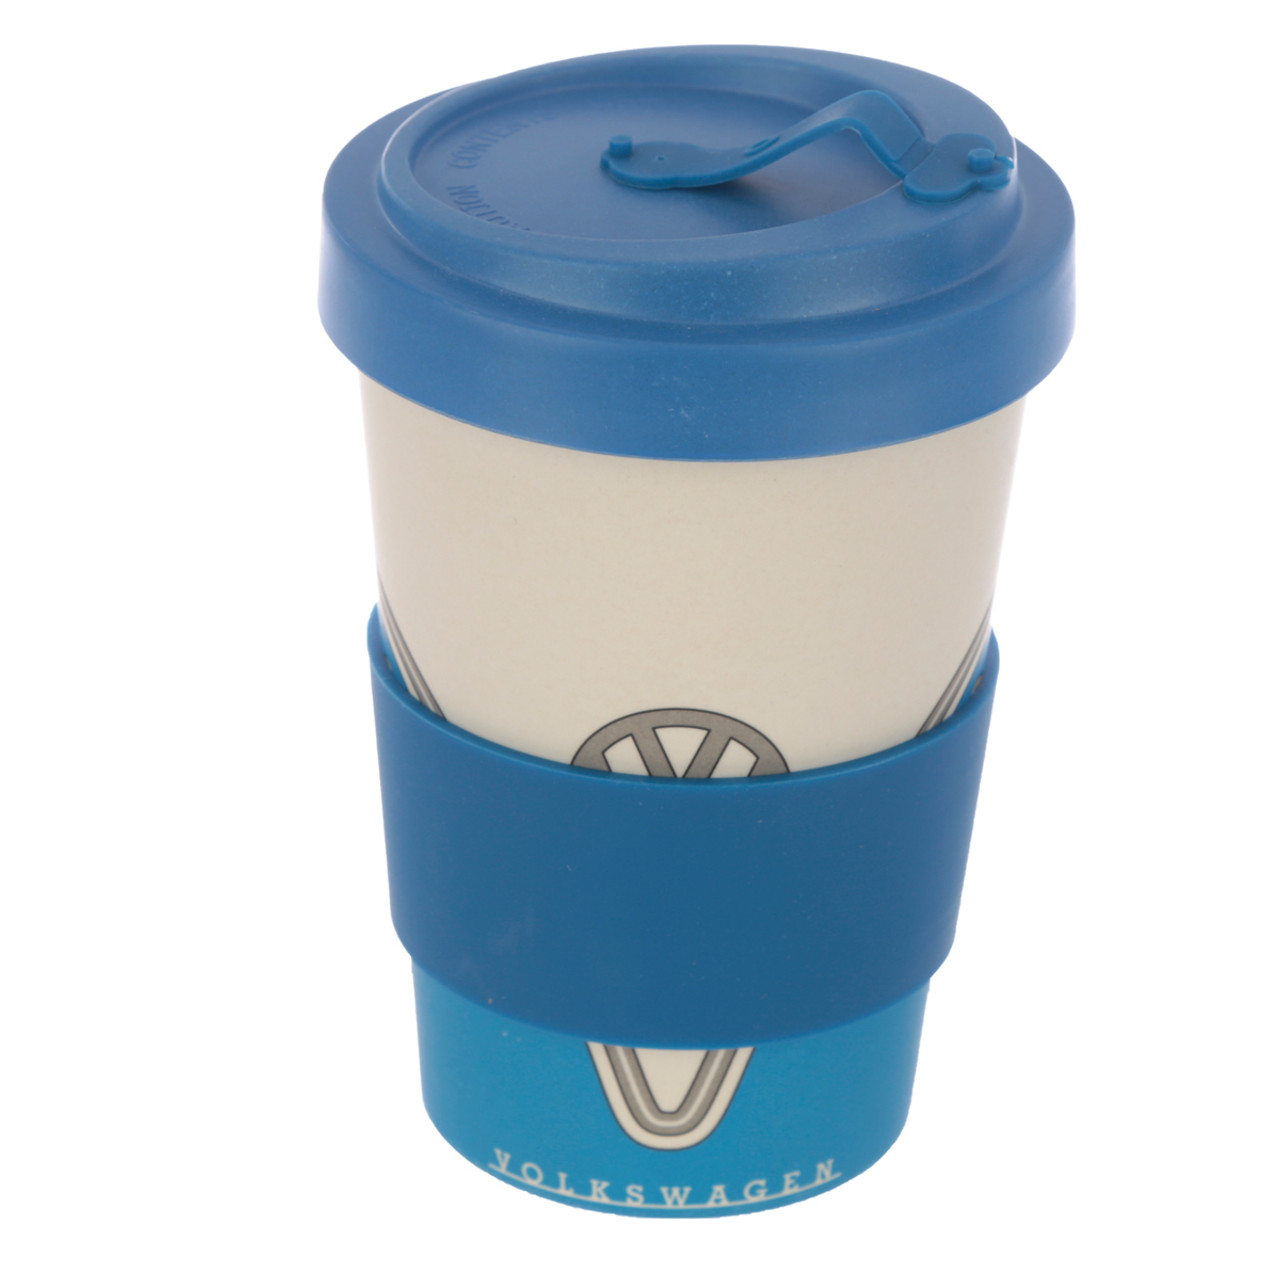 VW Travel Coffee Mug